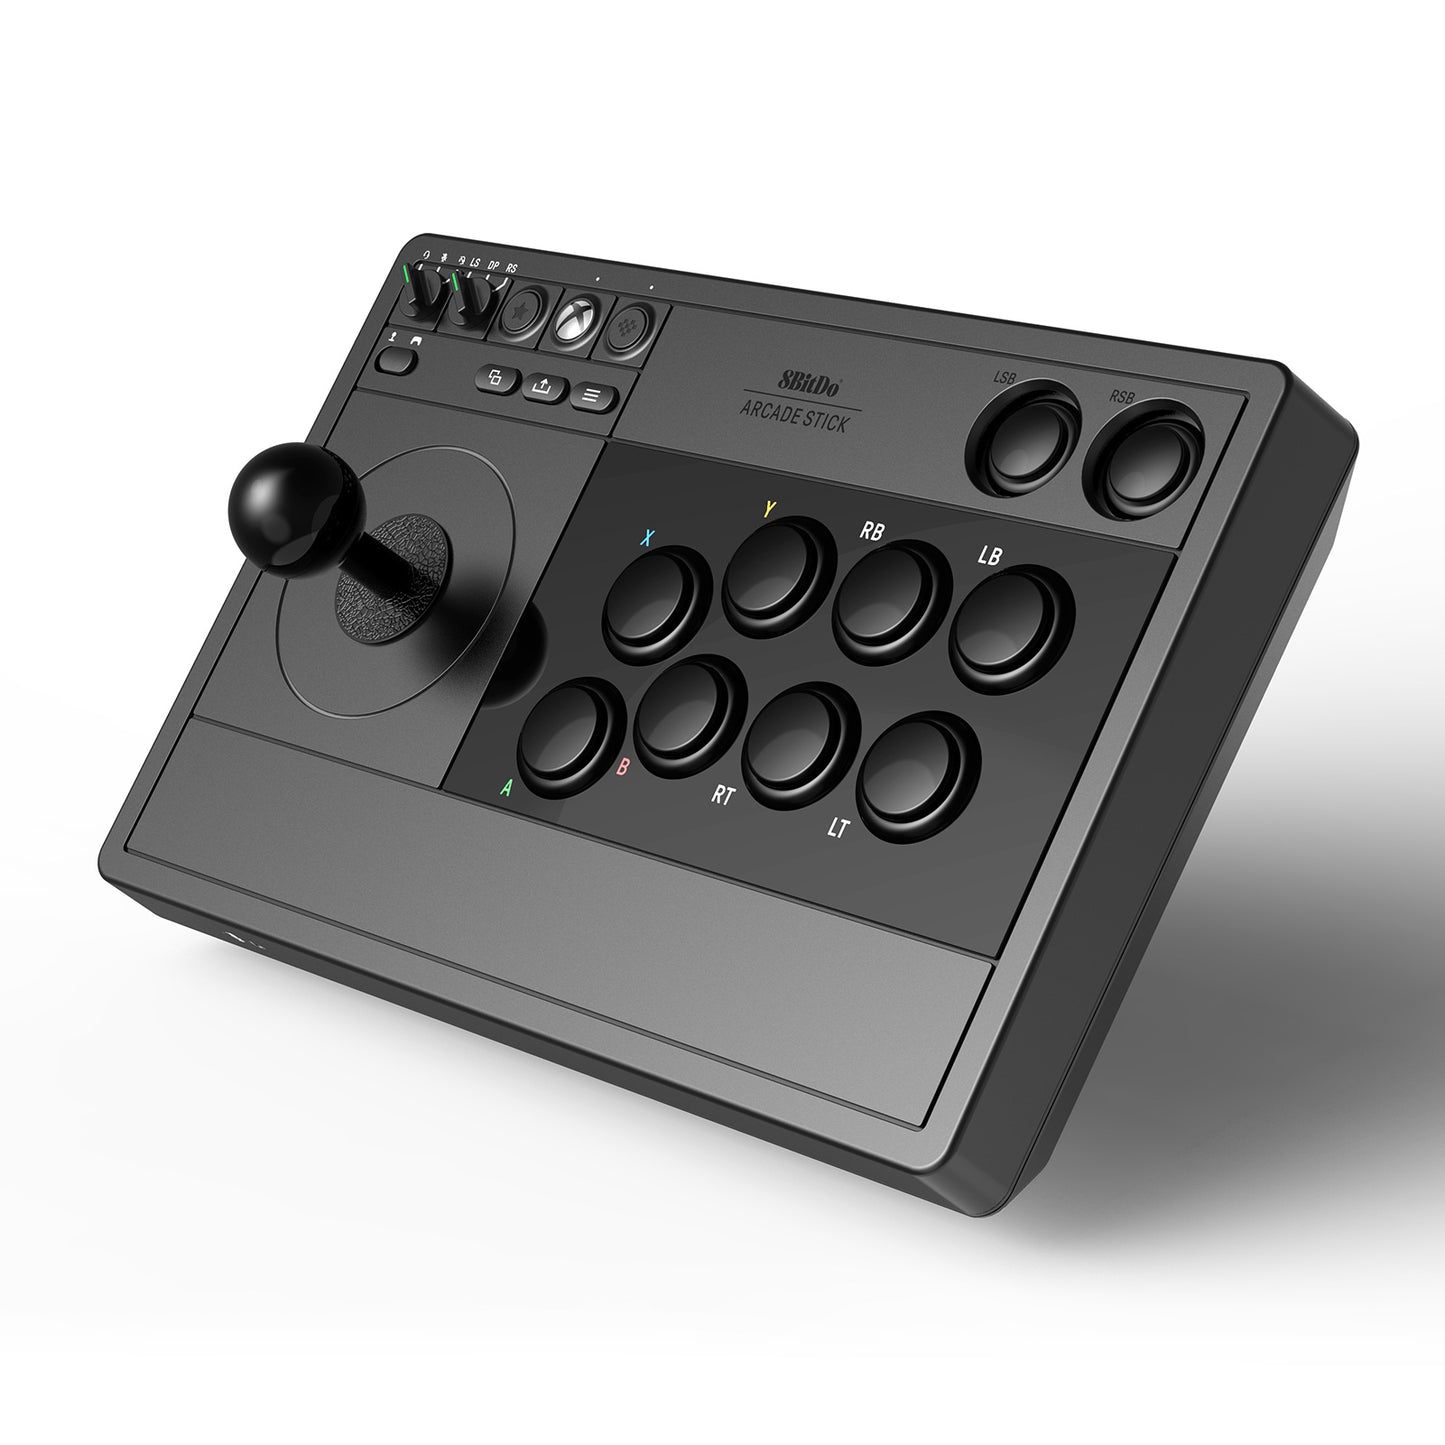 El nuevo Arcade Stick de 8Bitdo tiene licencia de Xbox y nos permite jugar  de manera inalámbrica con estilo retro